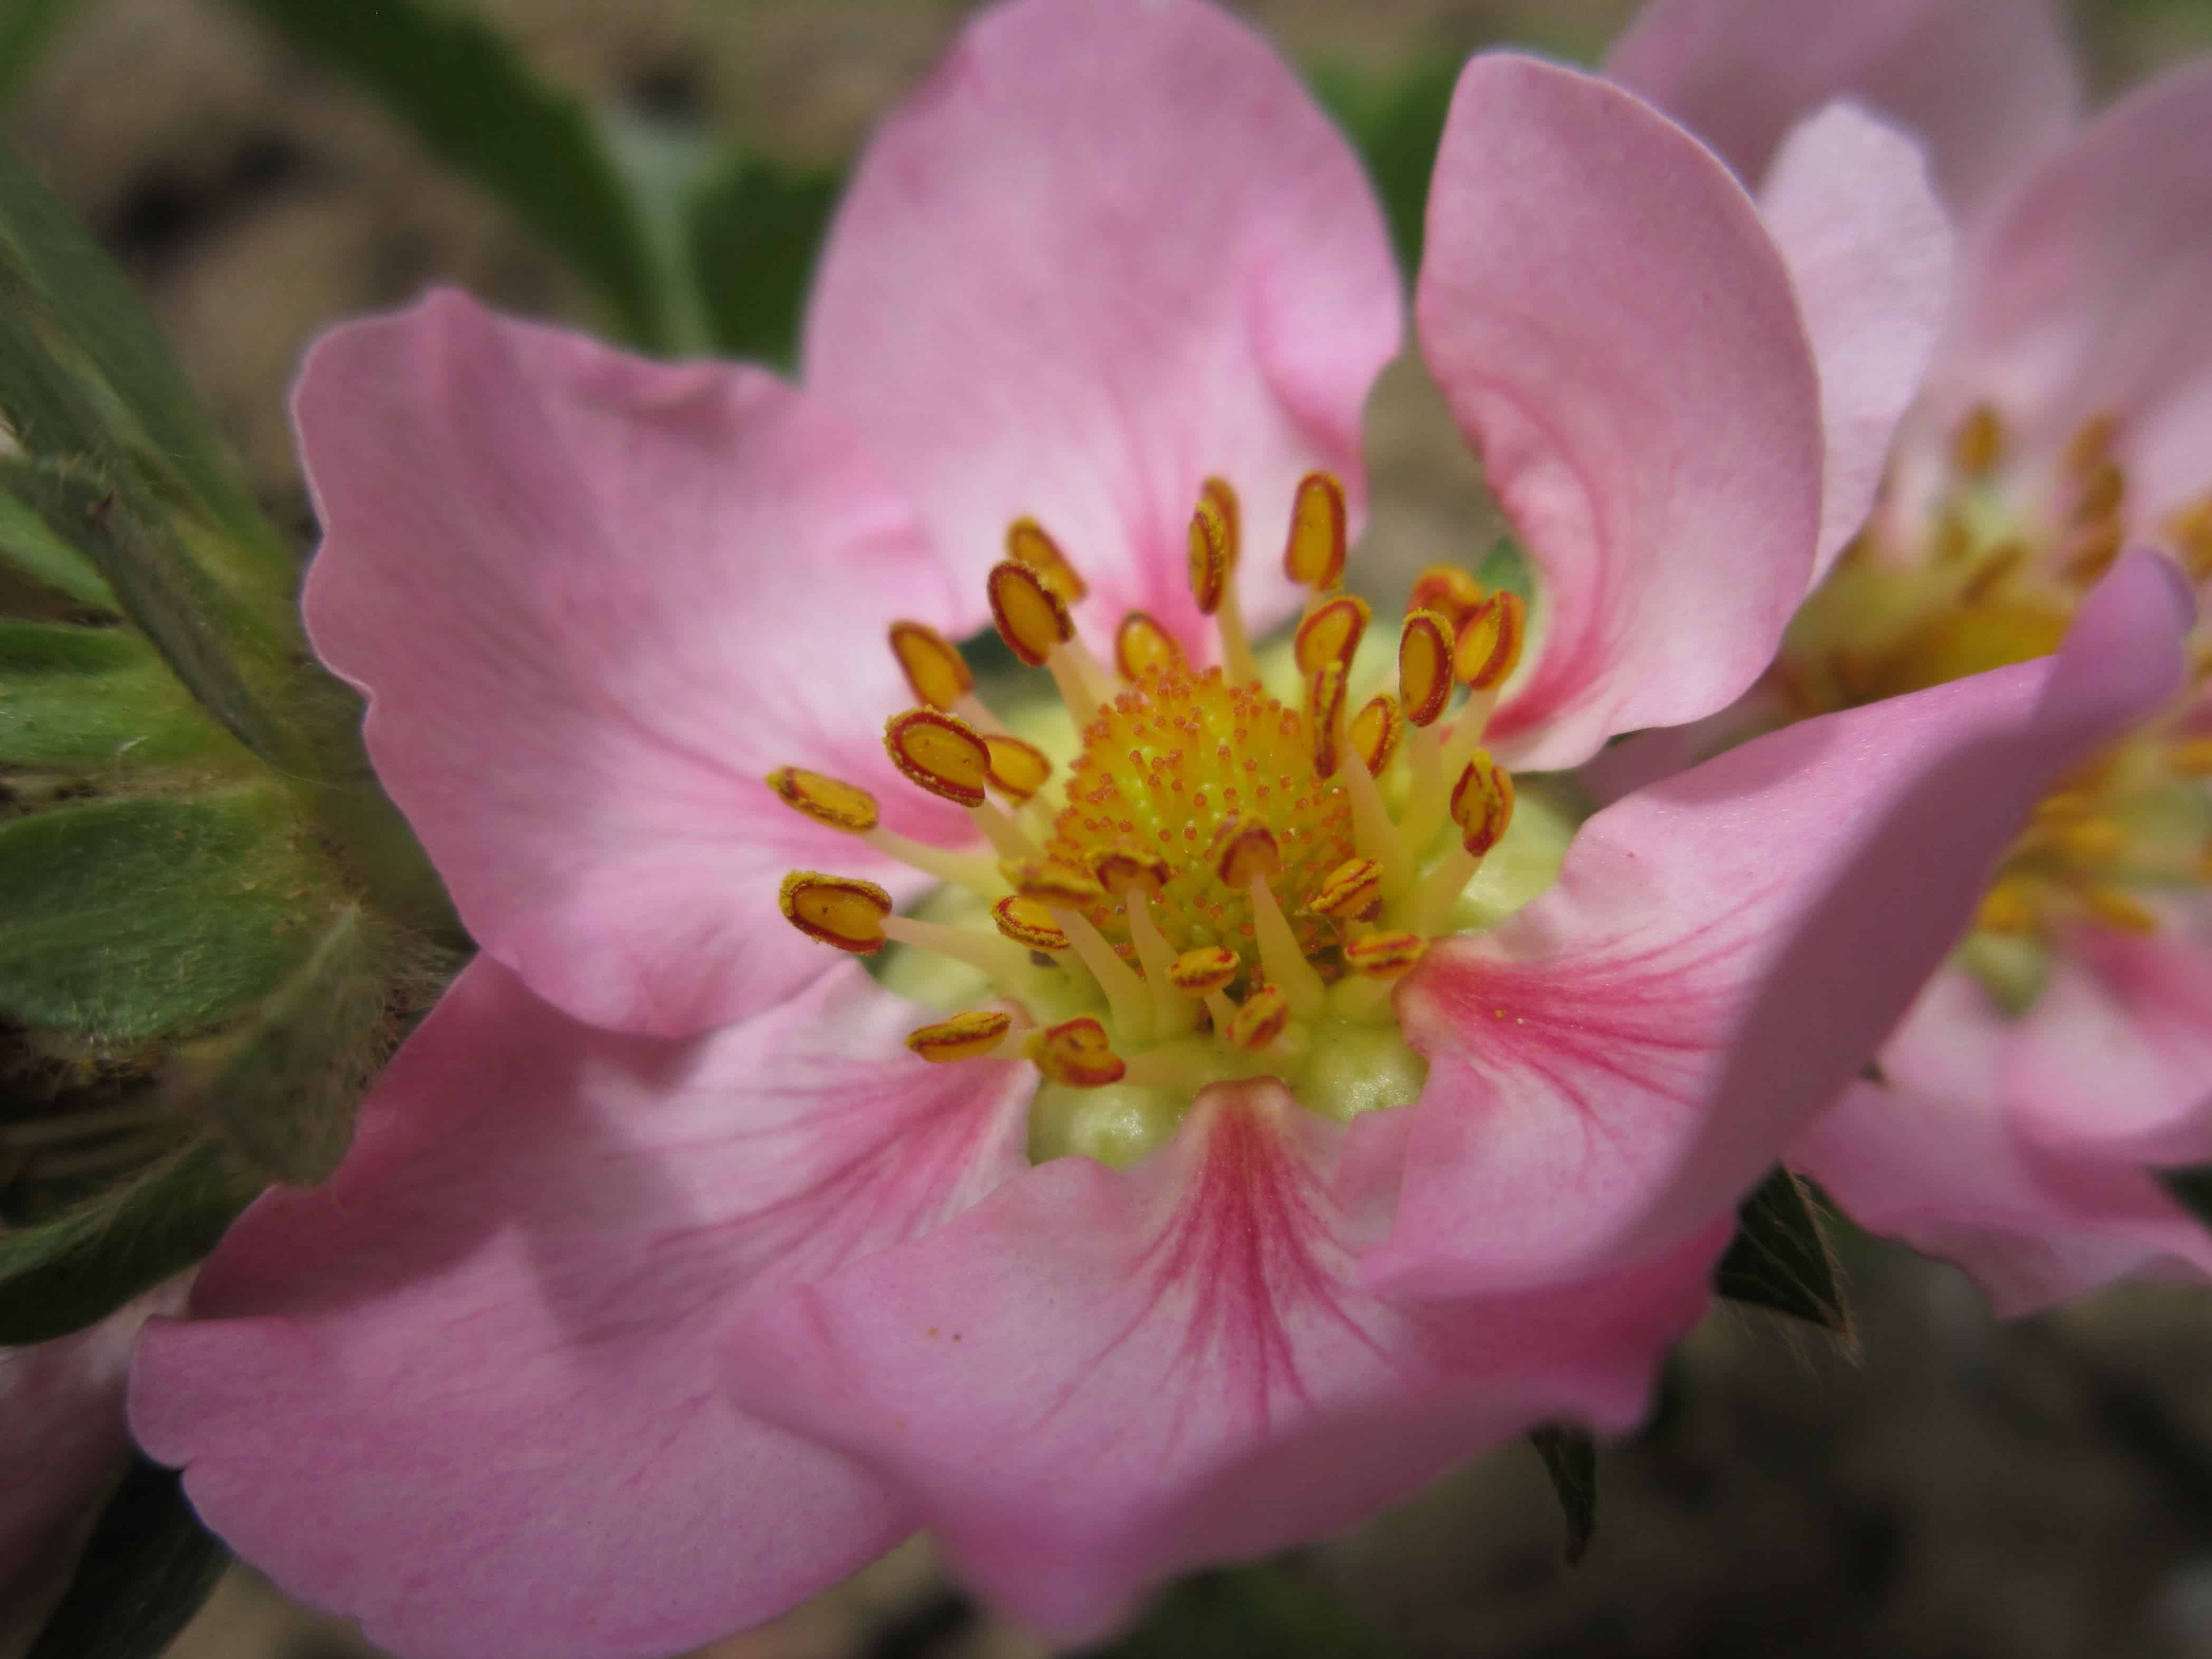 Free picture: horticulture, pink, petal, flower, vegetation, flora ...